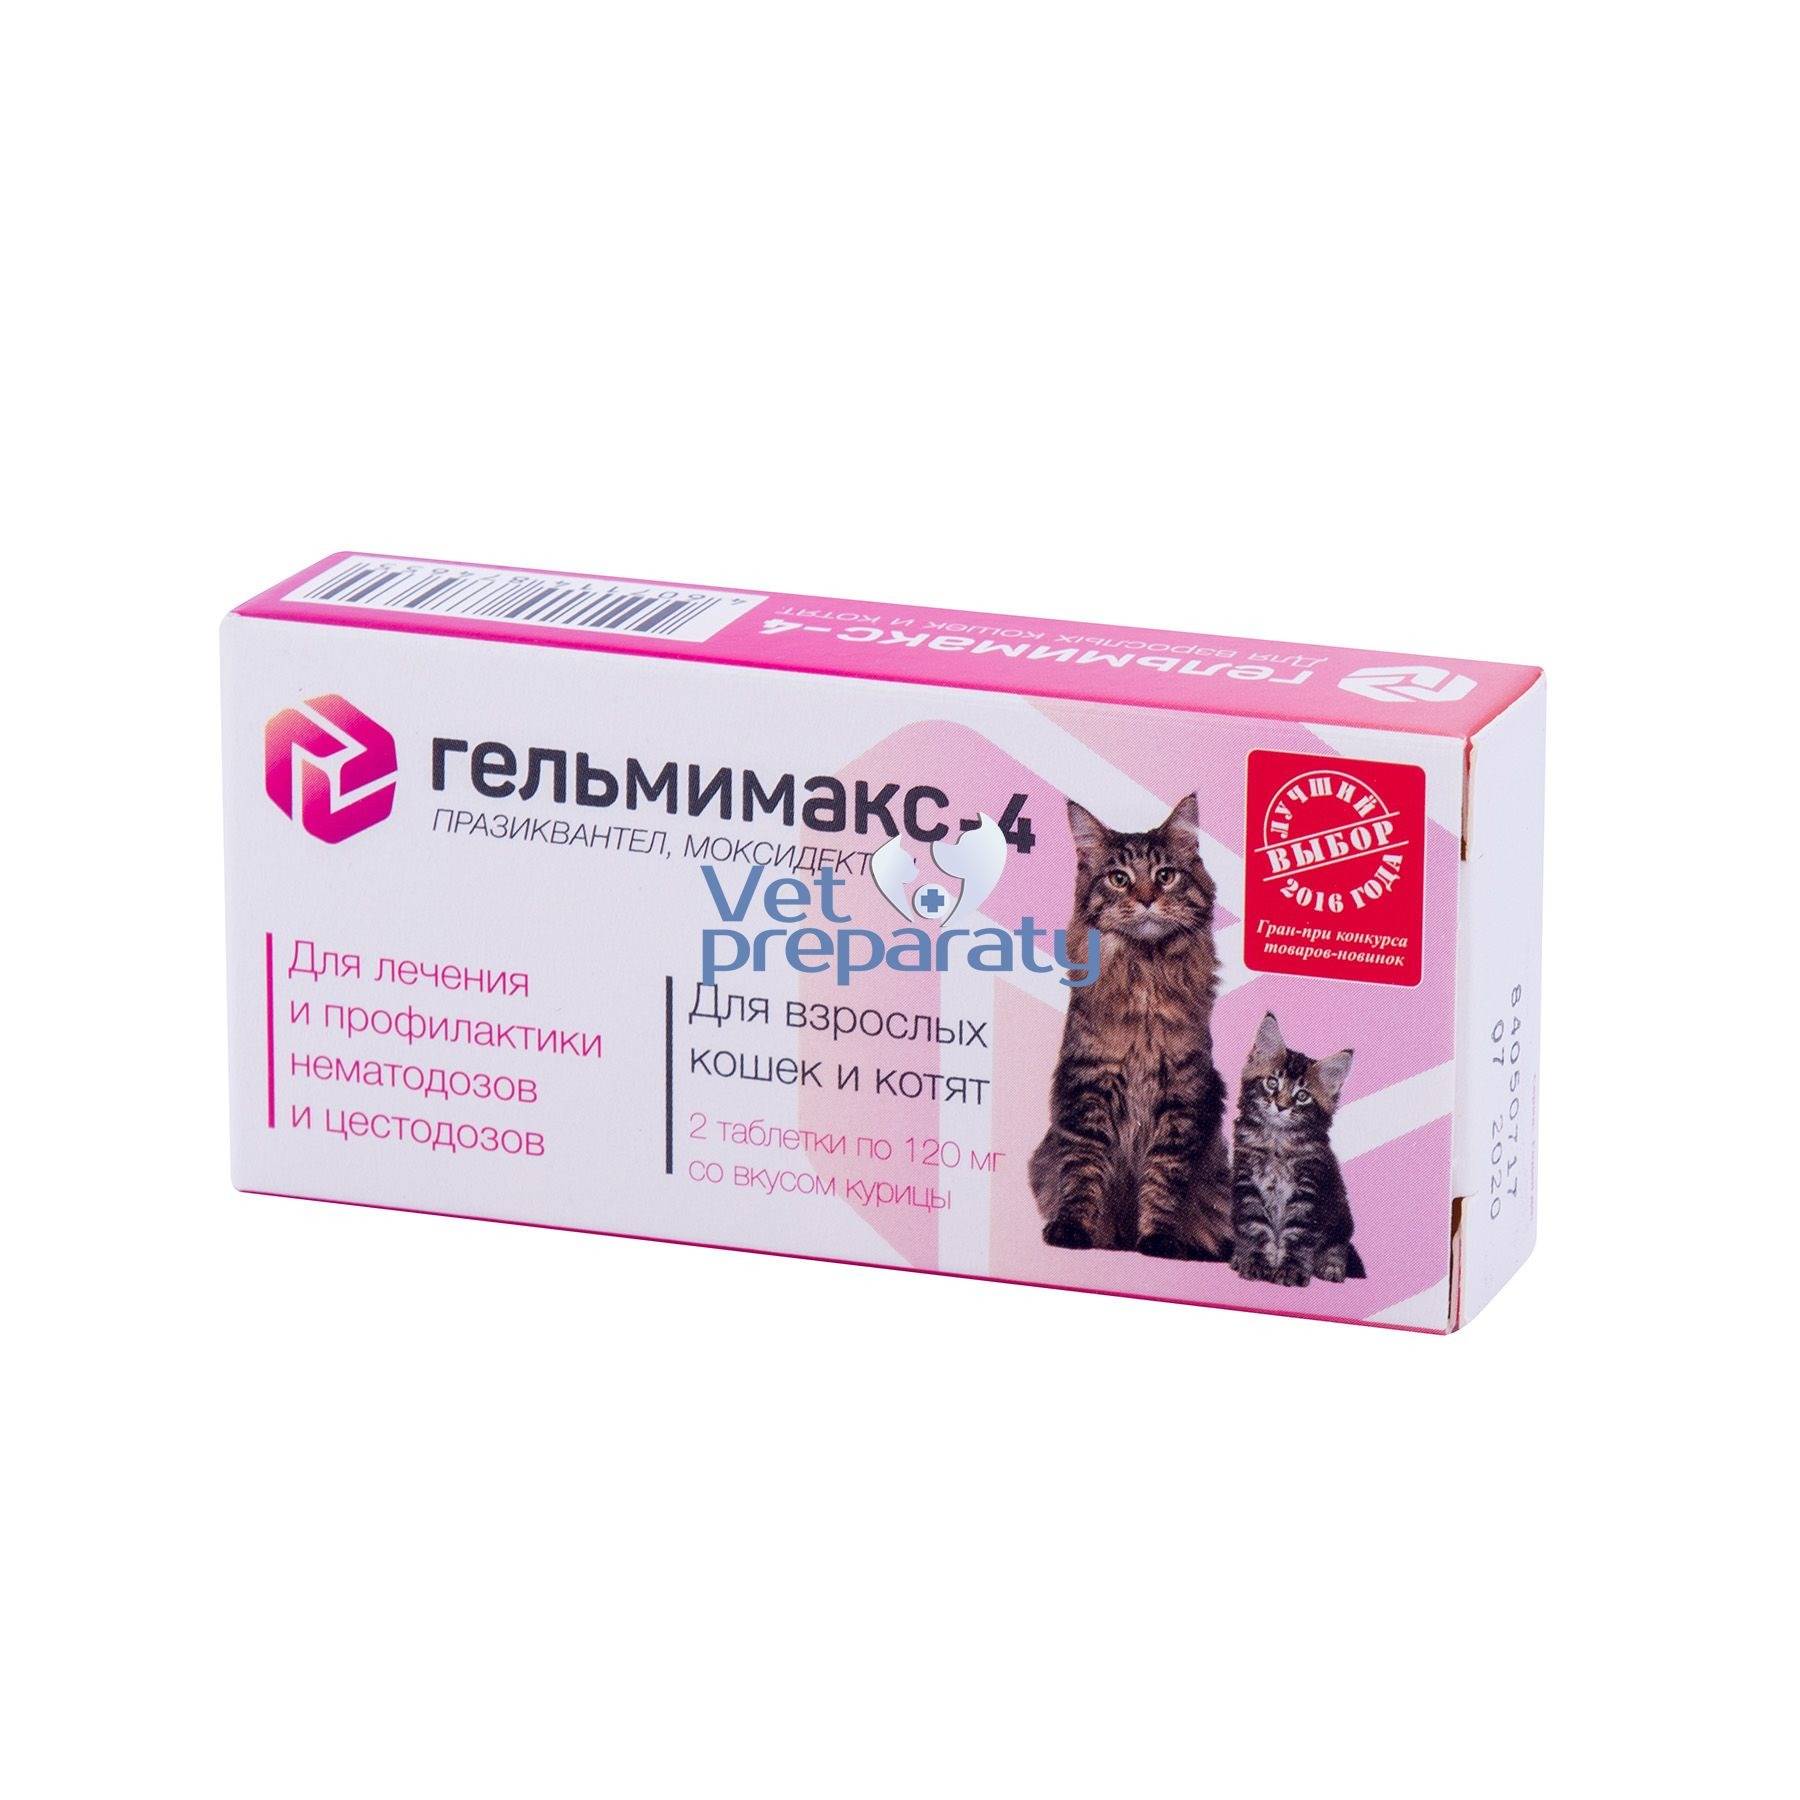 Особенности антигельминтного препарата гельмимакс для кошек